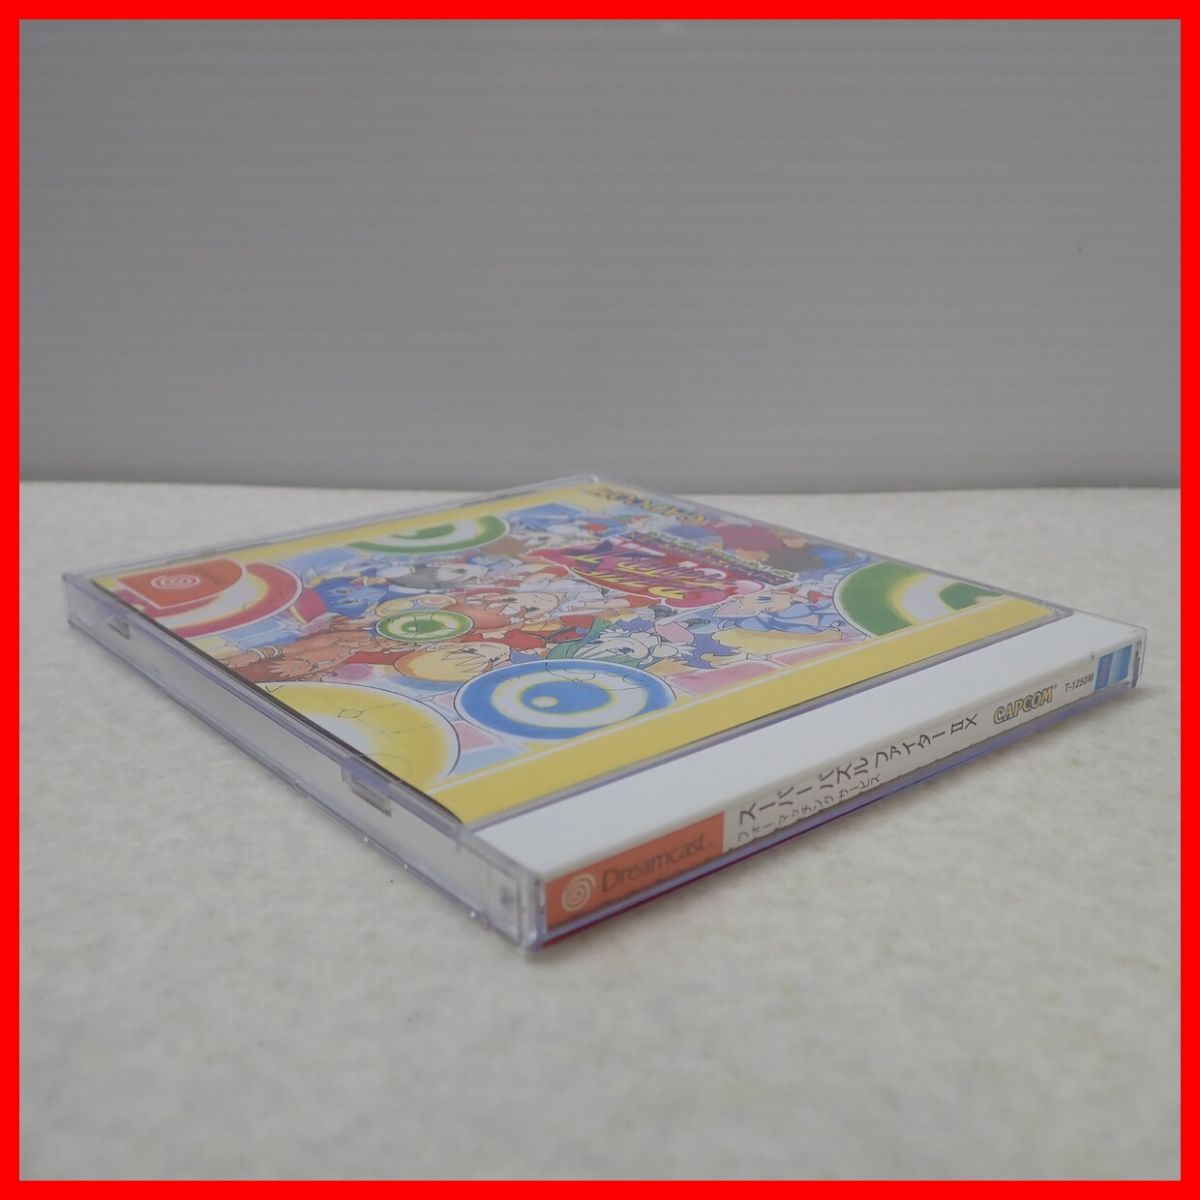 Φ operation guarantee goods DC Dreamcast super puzzle Fighter II X four matching service CAPCOM Capcom box opinion post card attaching [PP